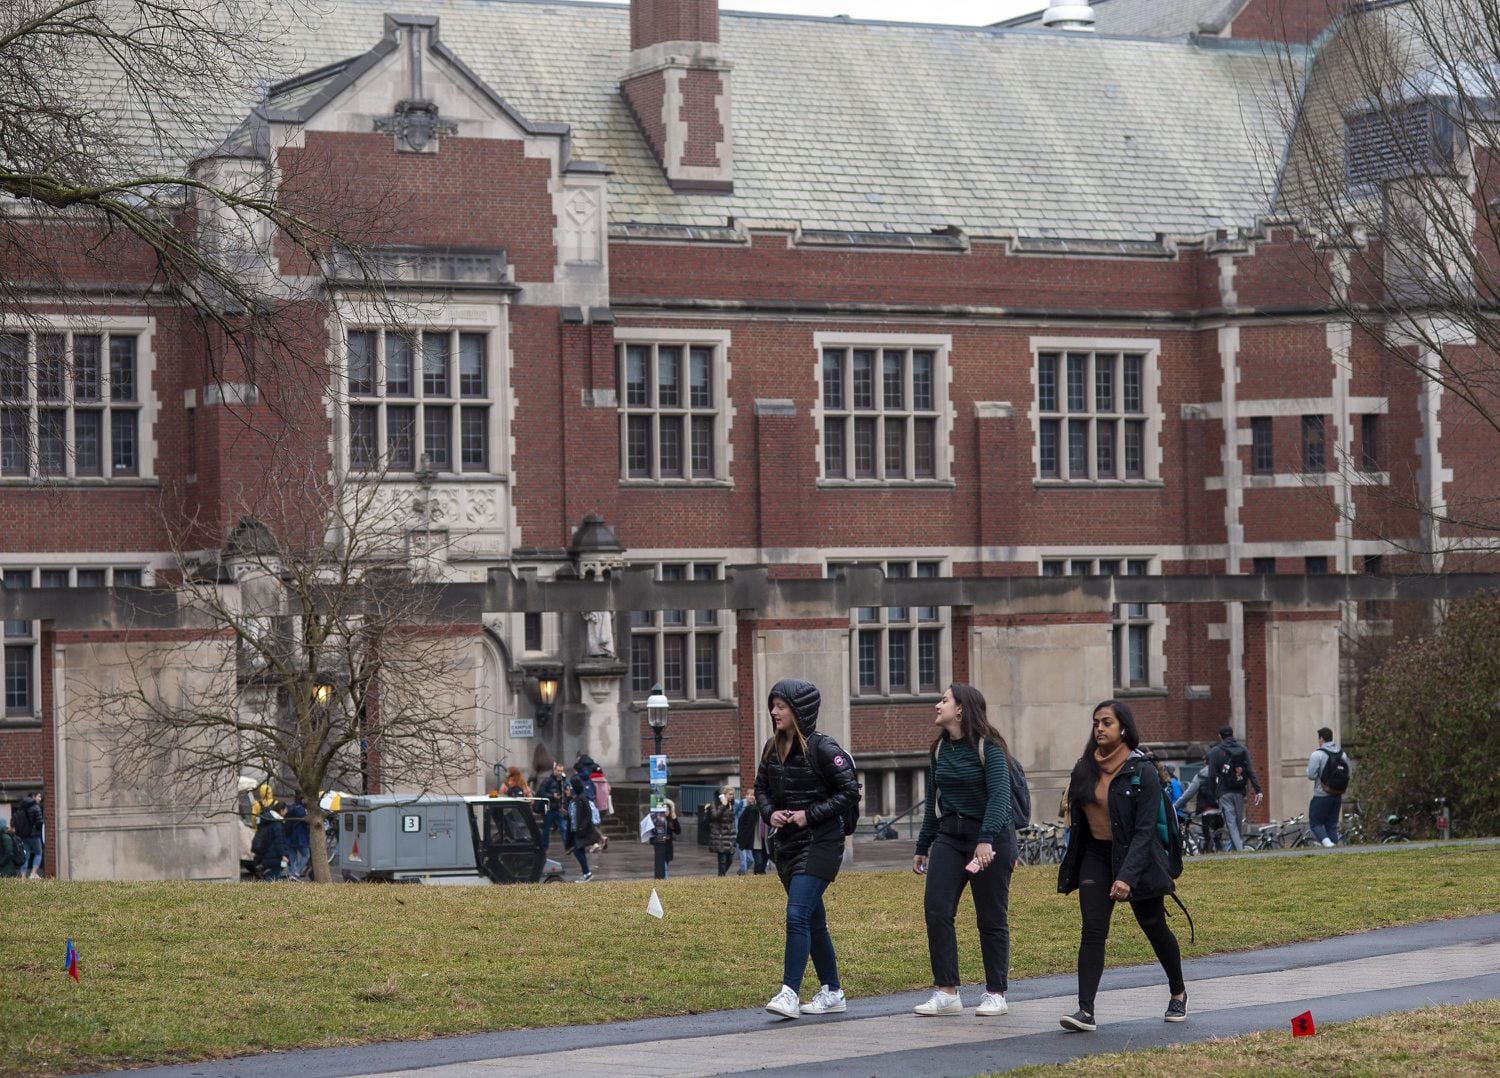 Estudantes em Princeton, Nova Jersey.